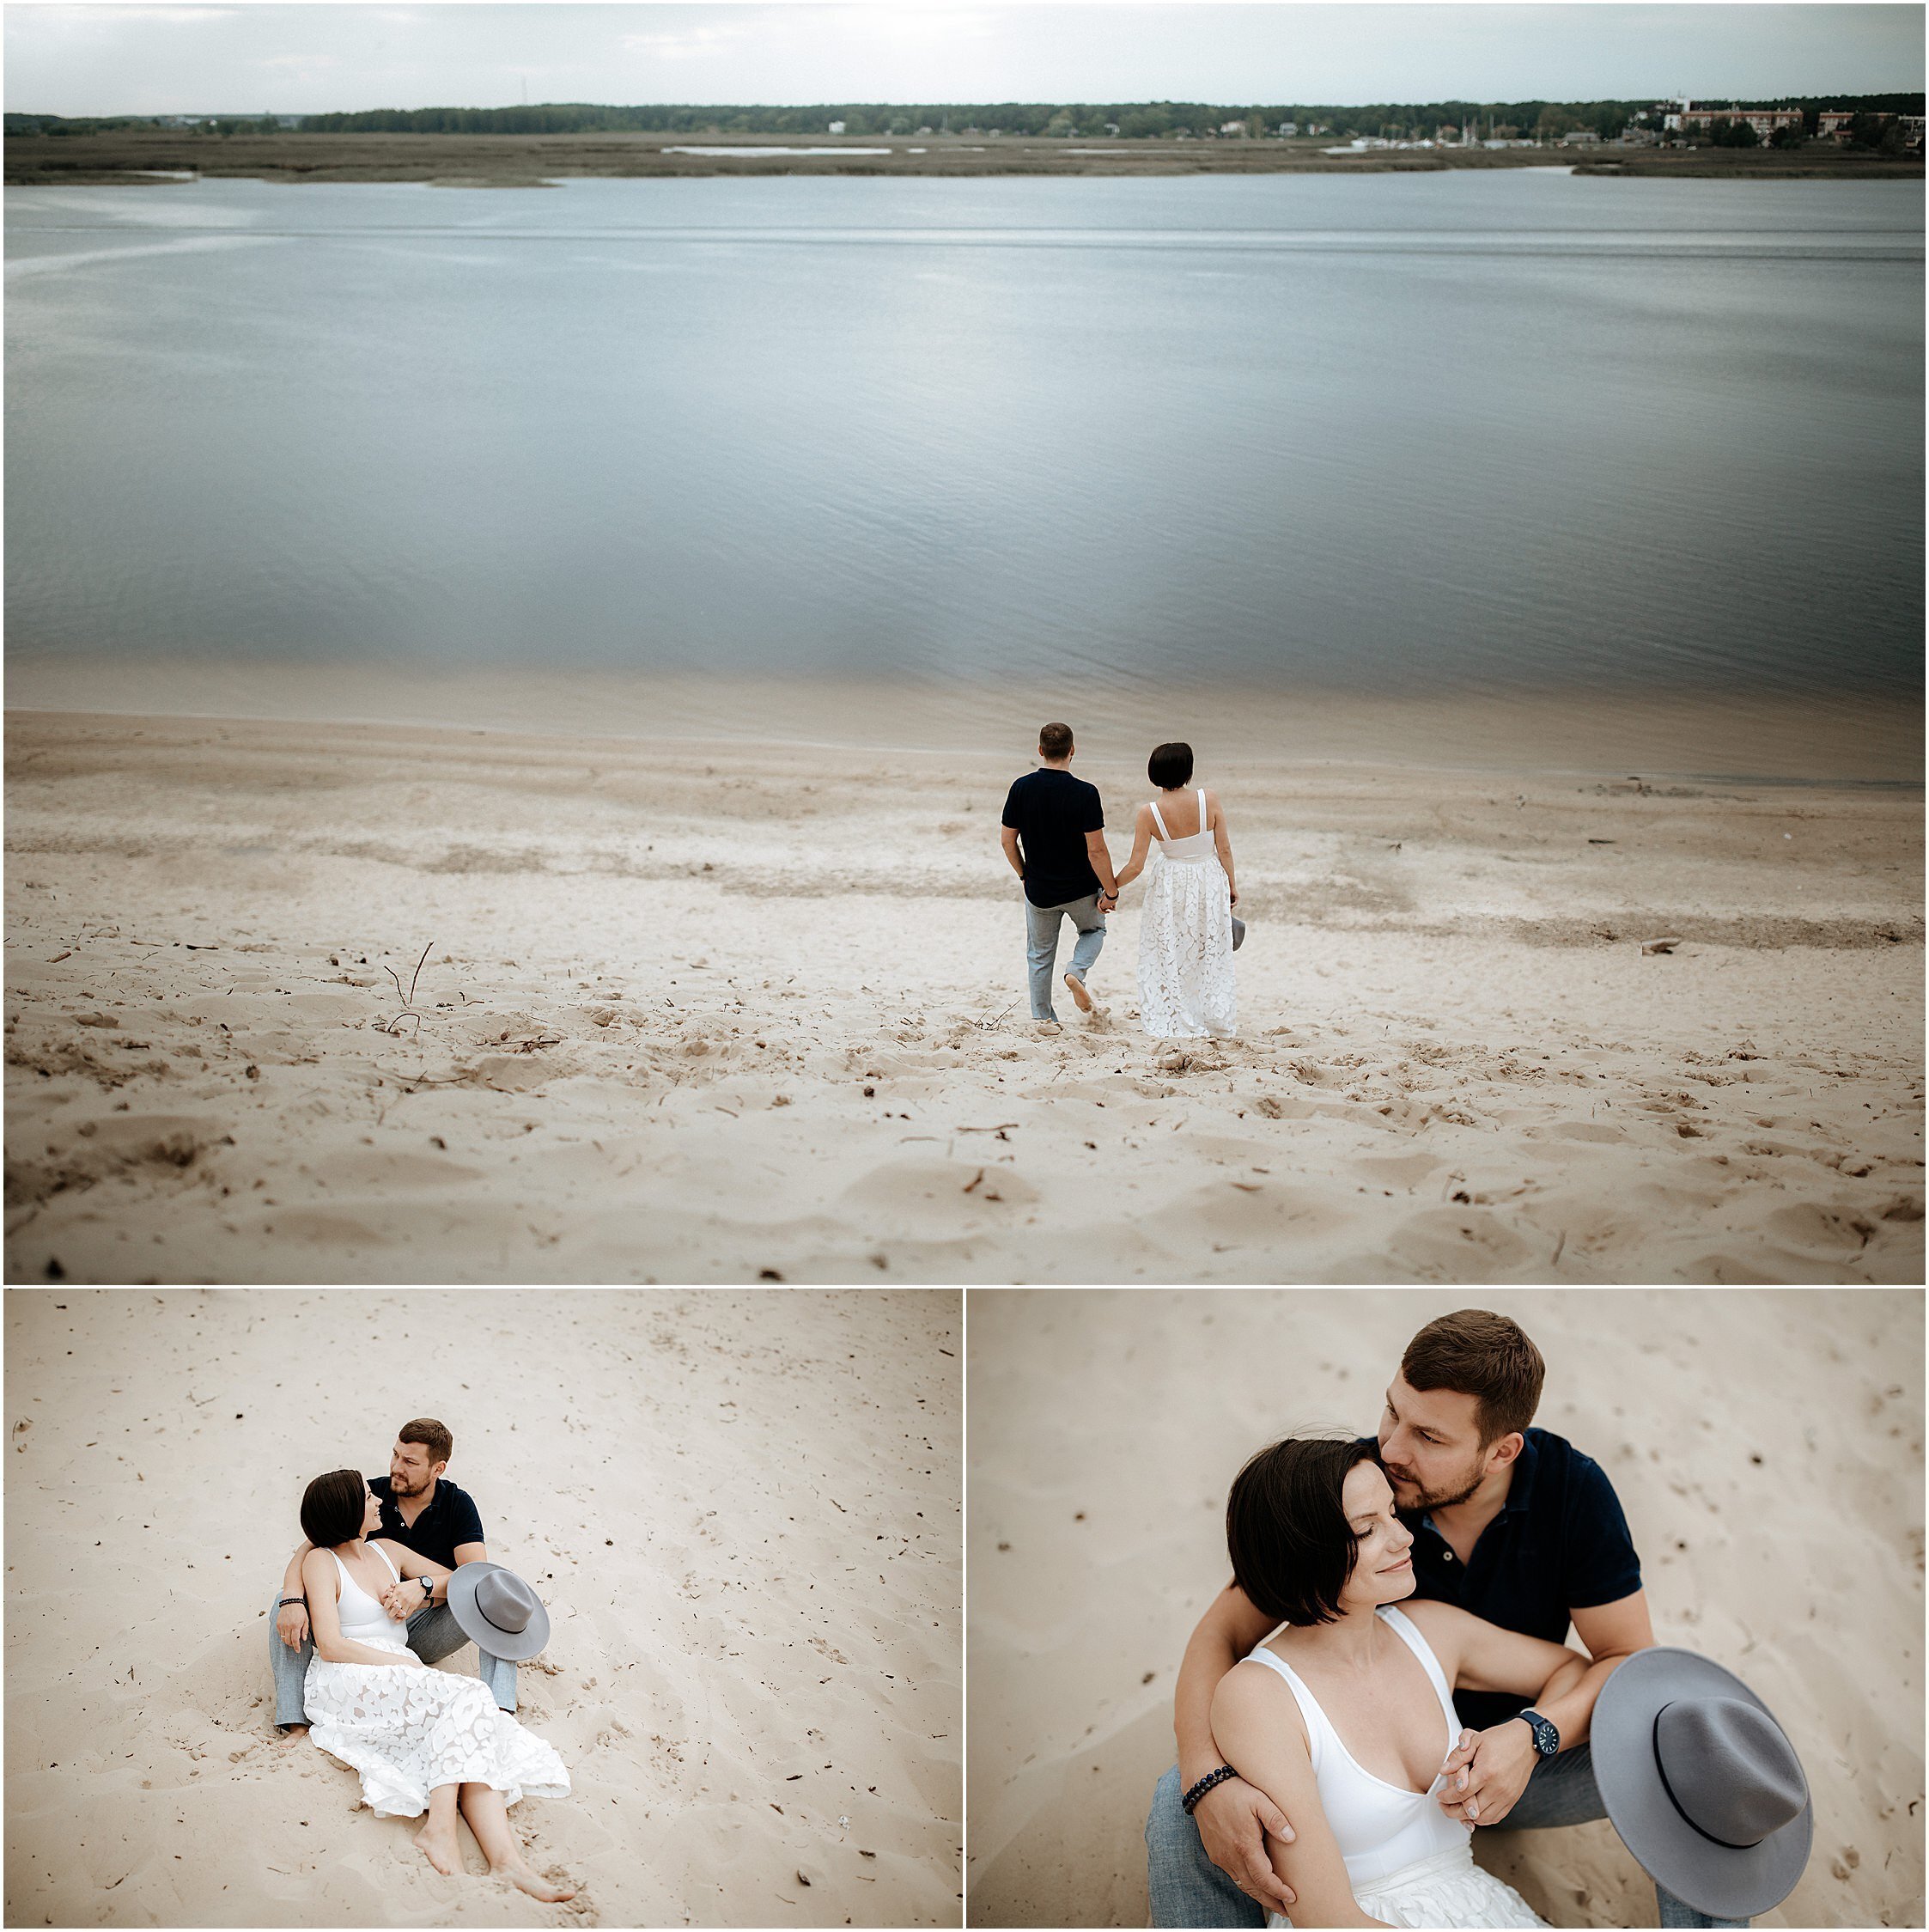 Zanda+Auckland+wedding+photographer+romantic+couple+portrait++white+sand+dunes+Europe+Latvia+New+Zealand_1.jpeg